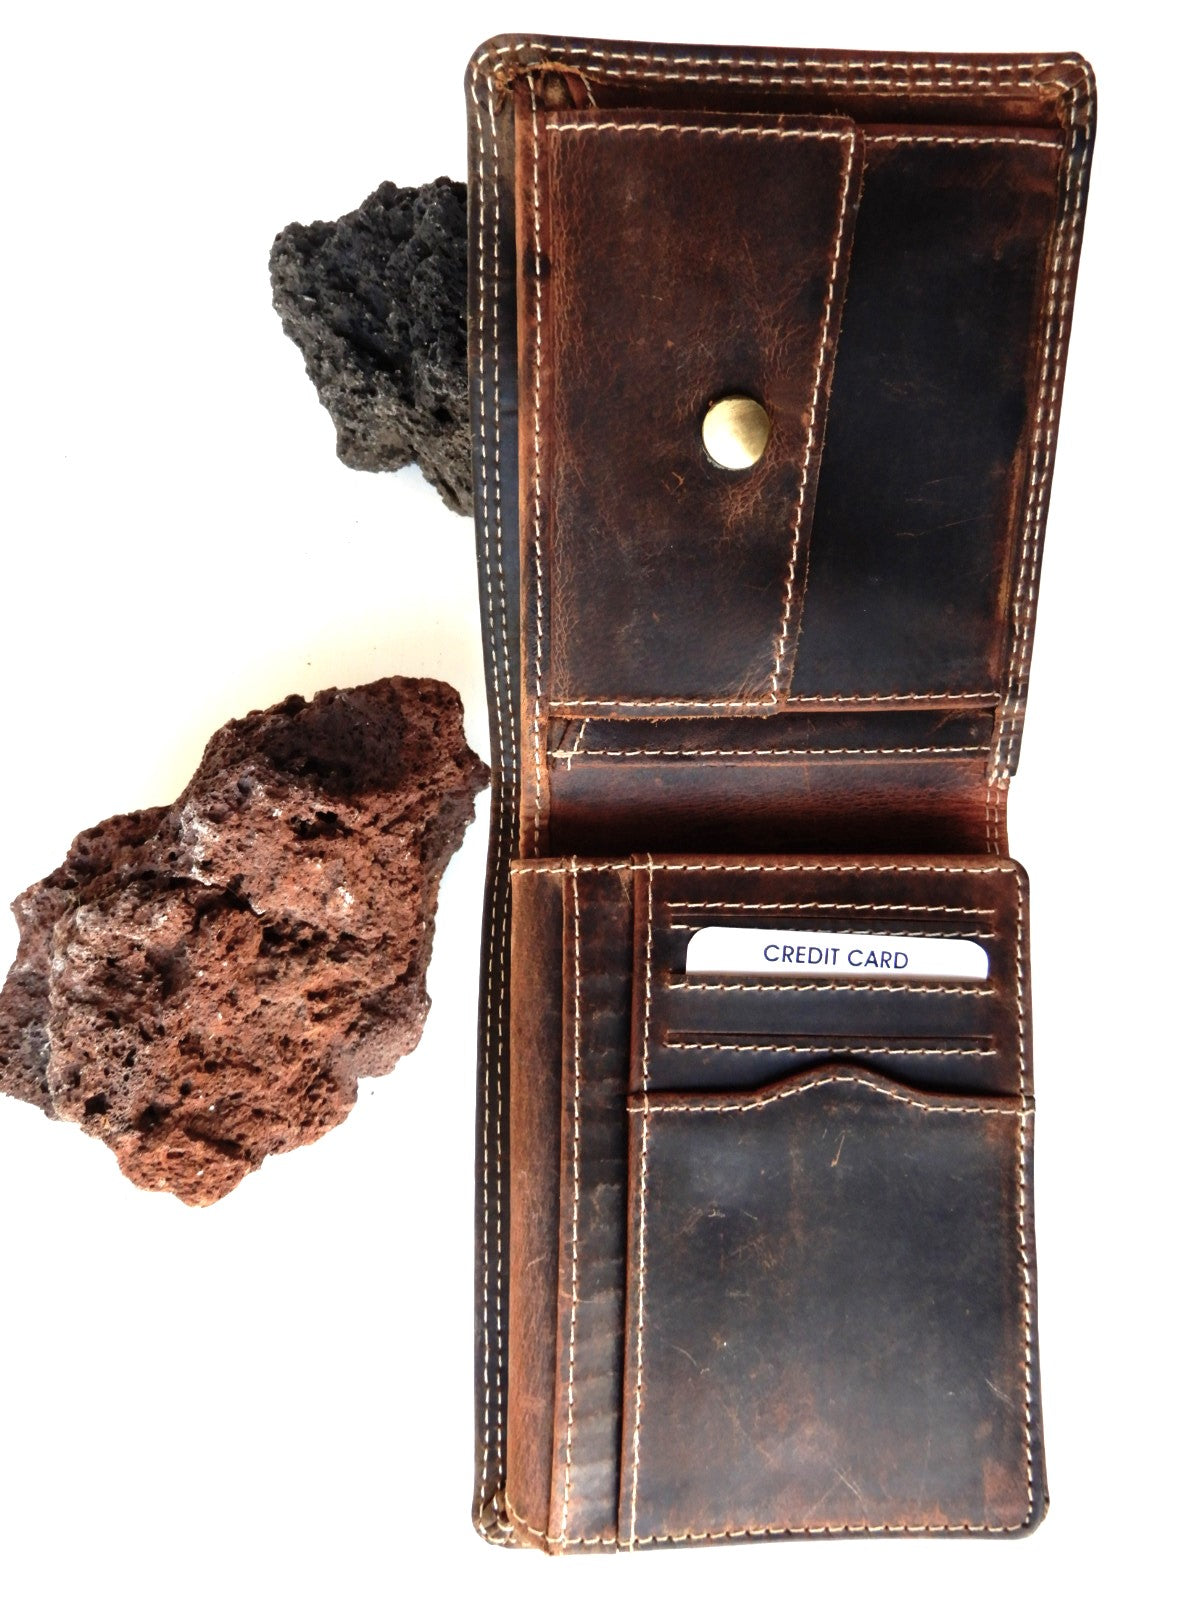  Büffel-Voll-Leder Geldböse als Querformat mit RFID-protect vom KüstenKlaus